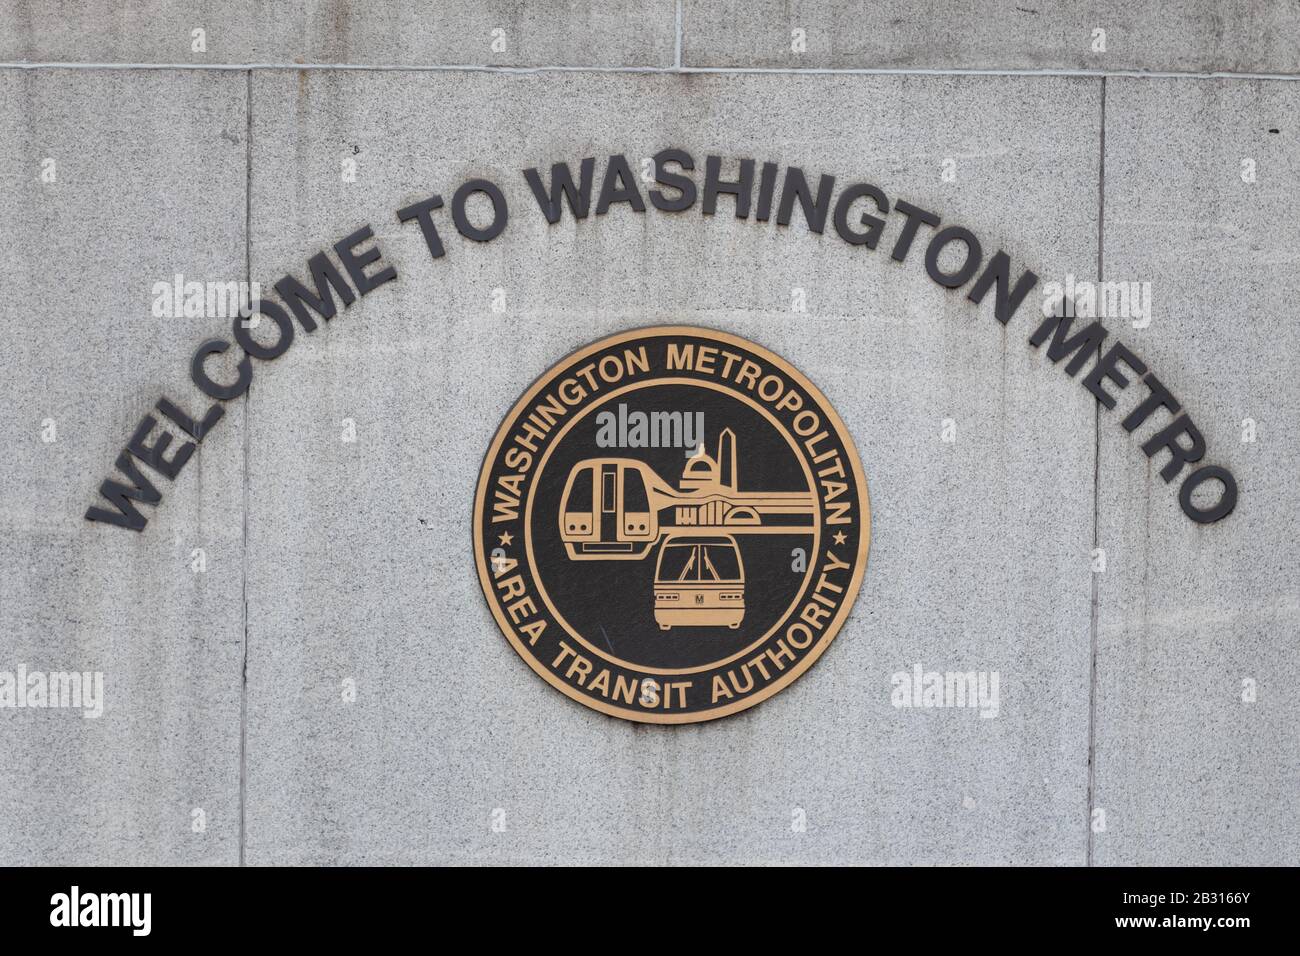 Washington Metropolitan Area Transit Authority logo below a welcome sign to an entrance to Washington Metro station. Stock Photo